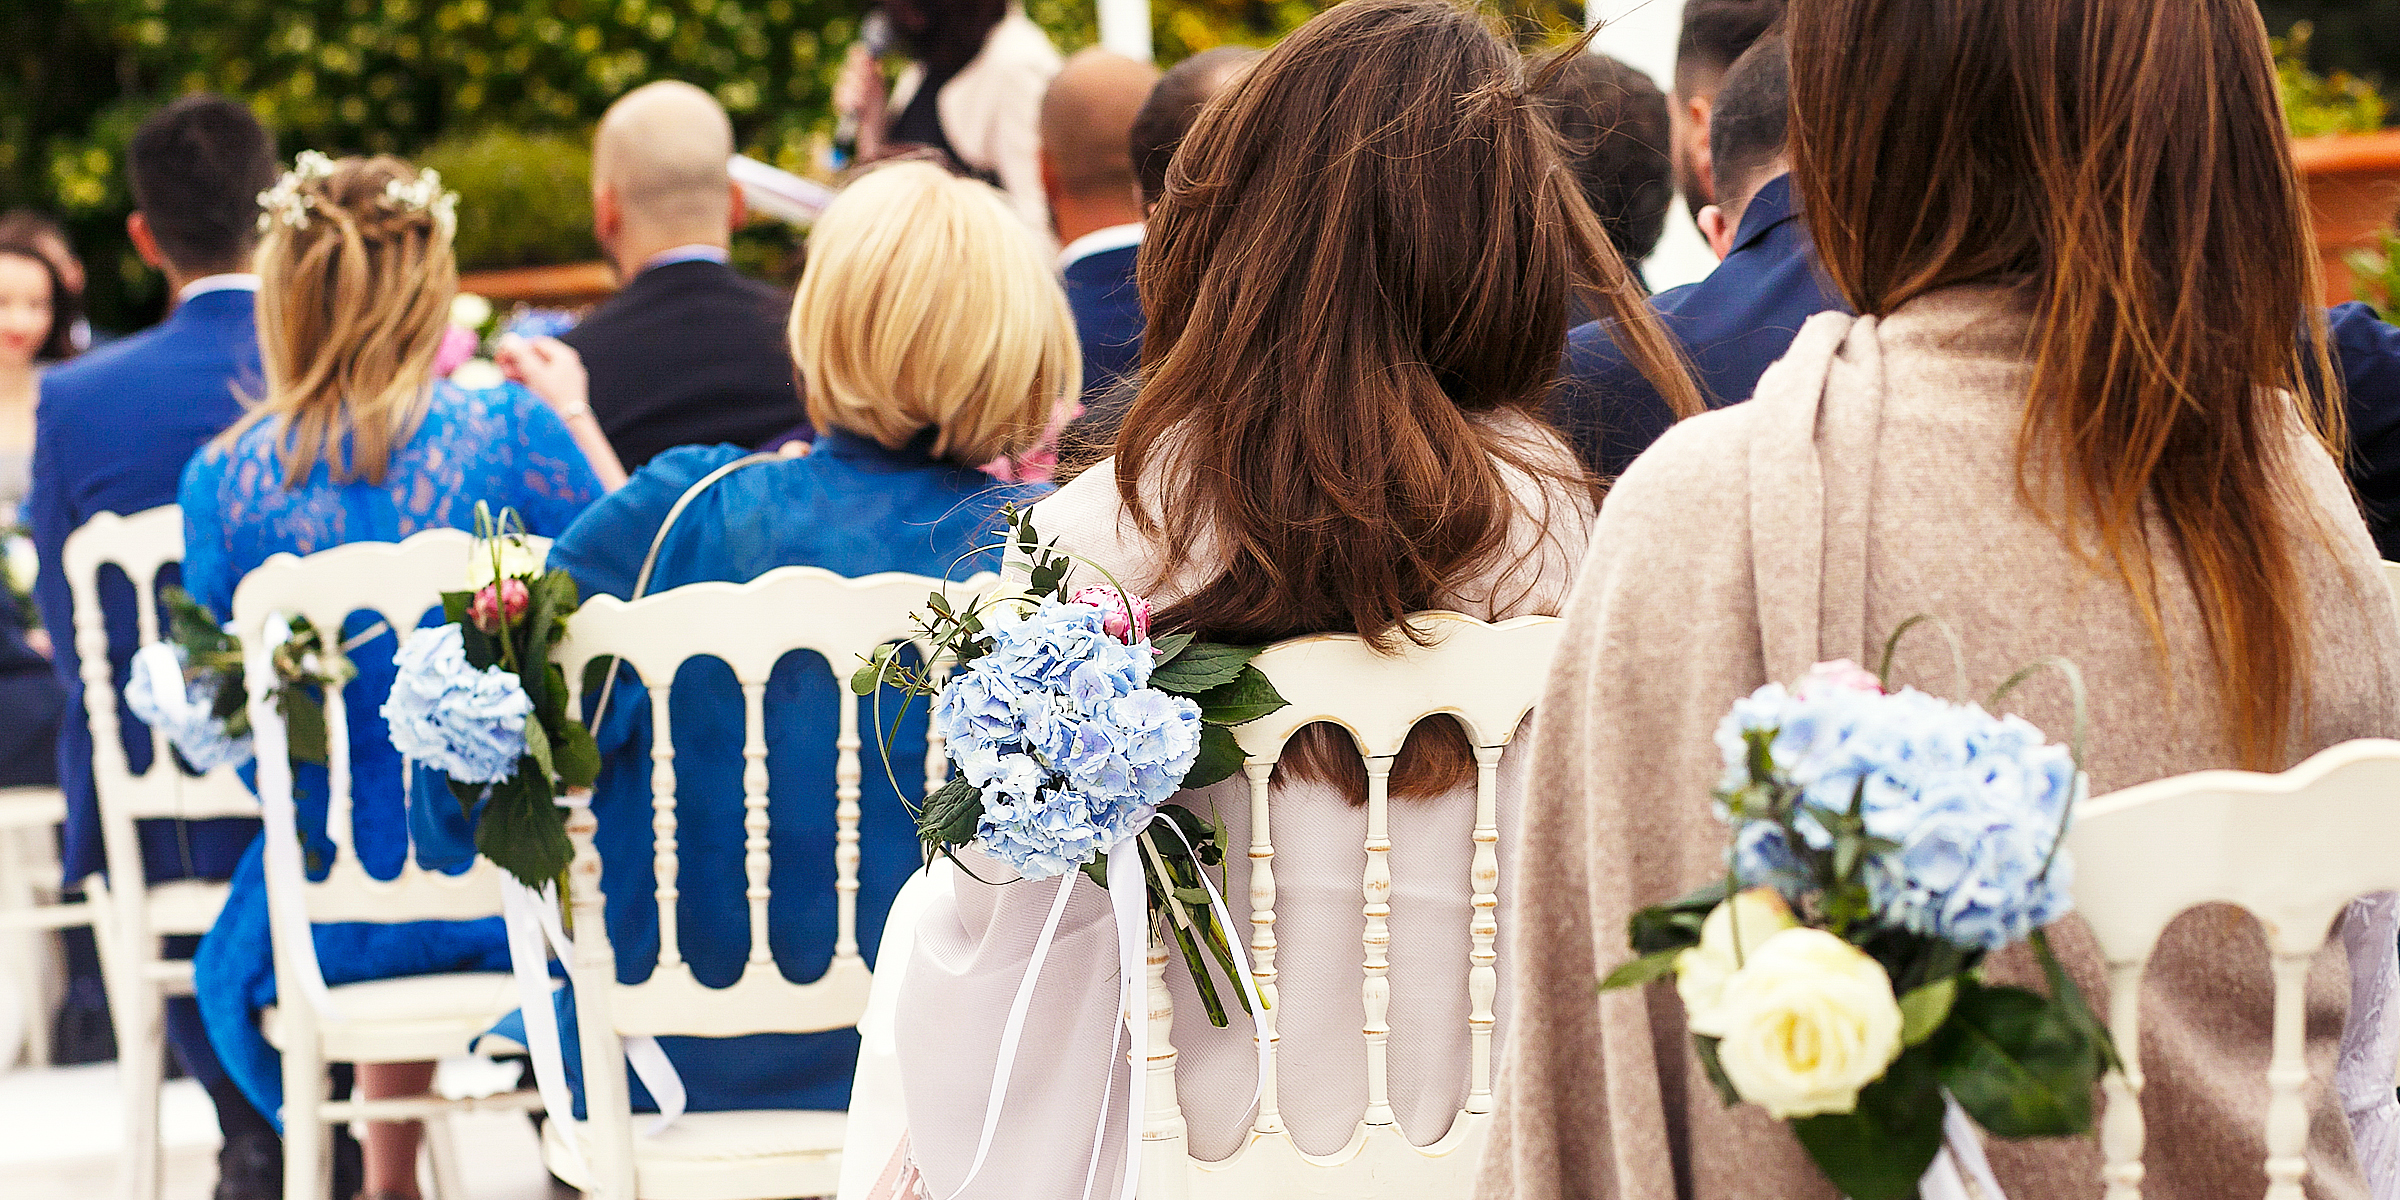 Des gens à un mariage | Source : Shutterstock